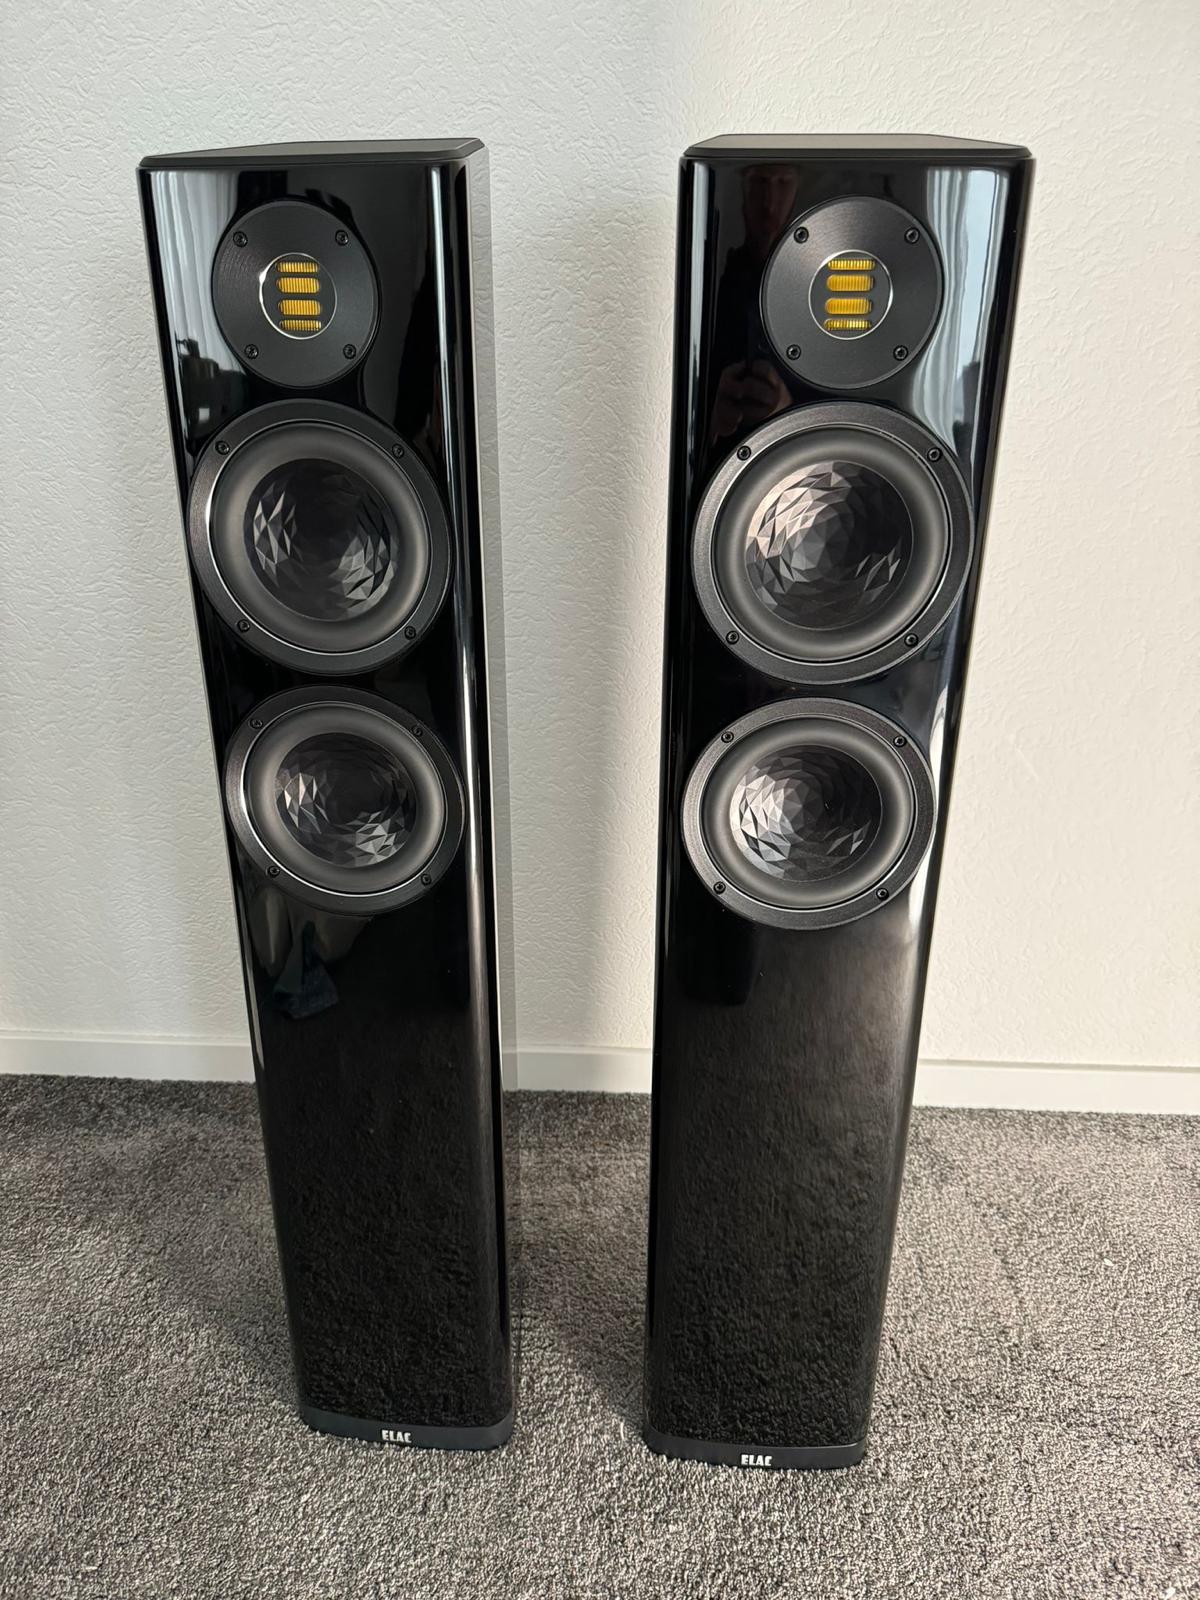 Elac Vela FS407 speakers in black